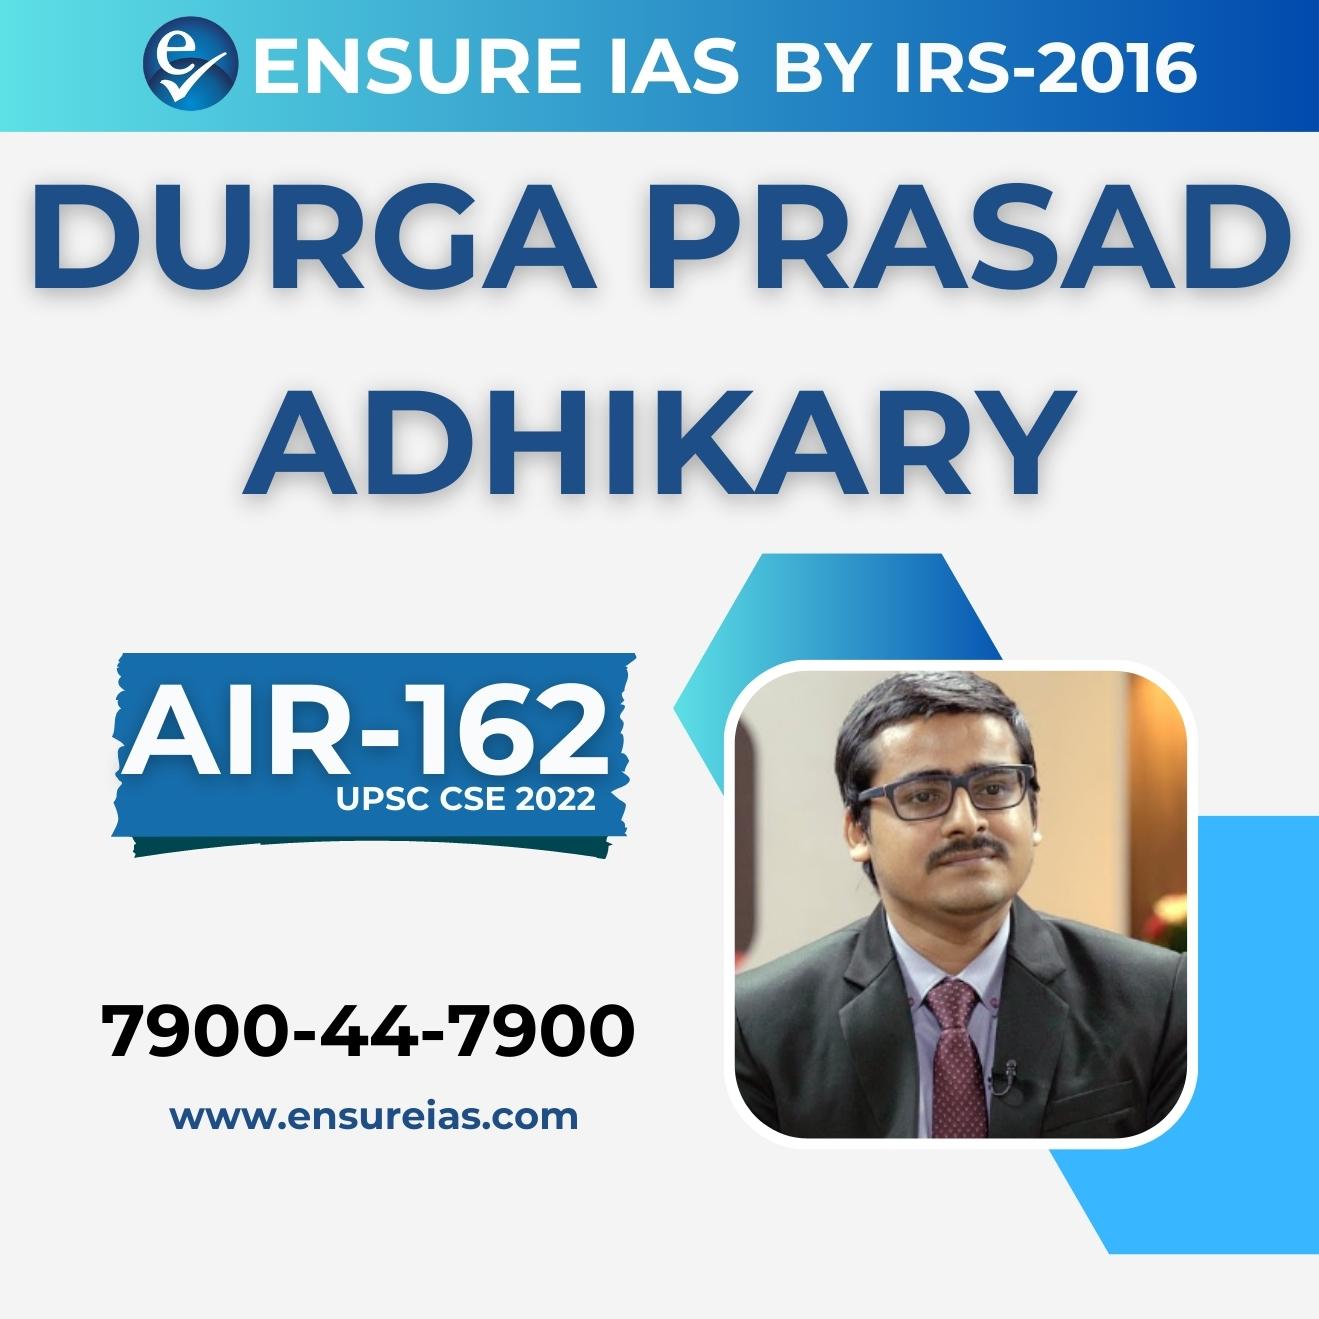 img-DURGA PRASAD ADHIKARY - AIR 162